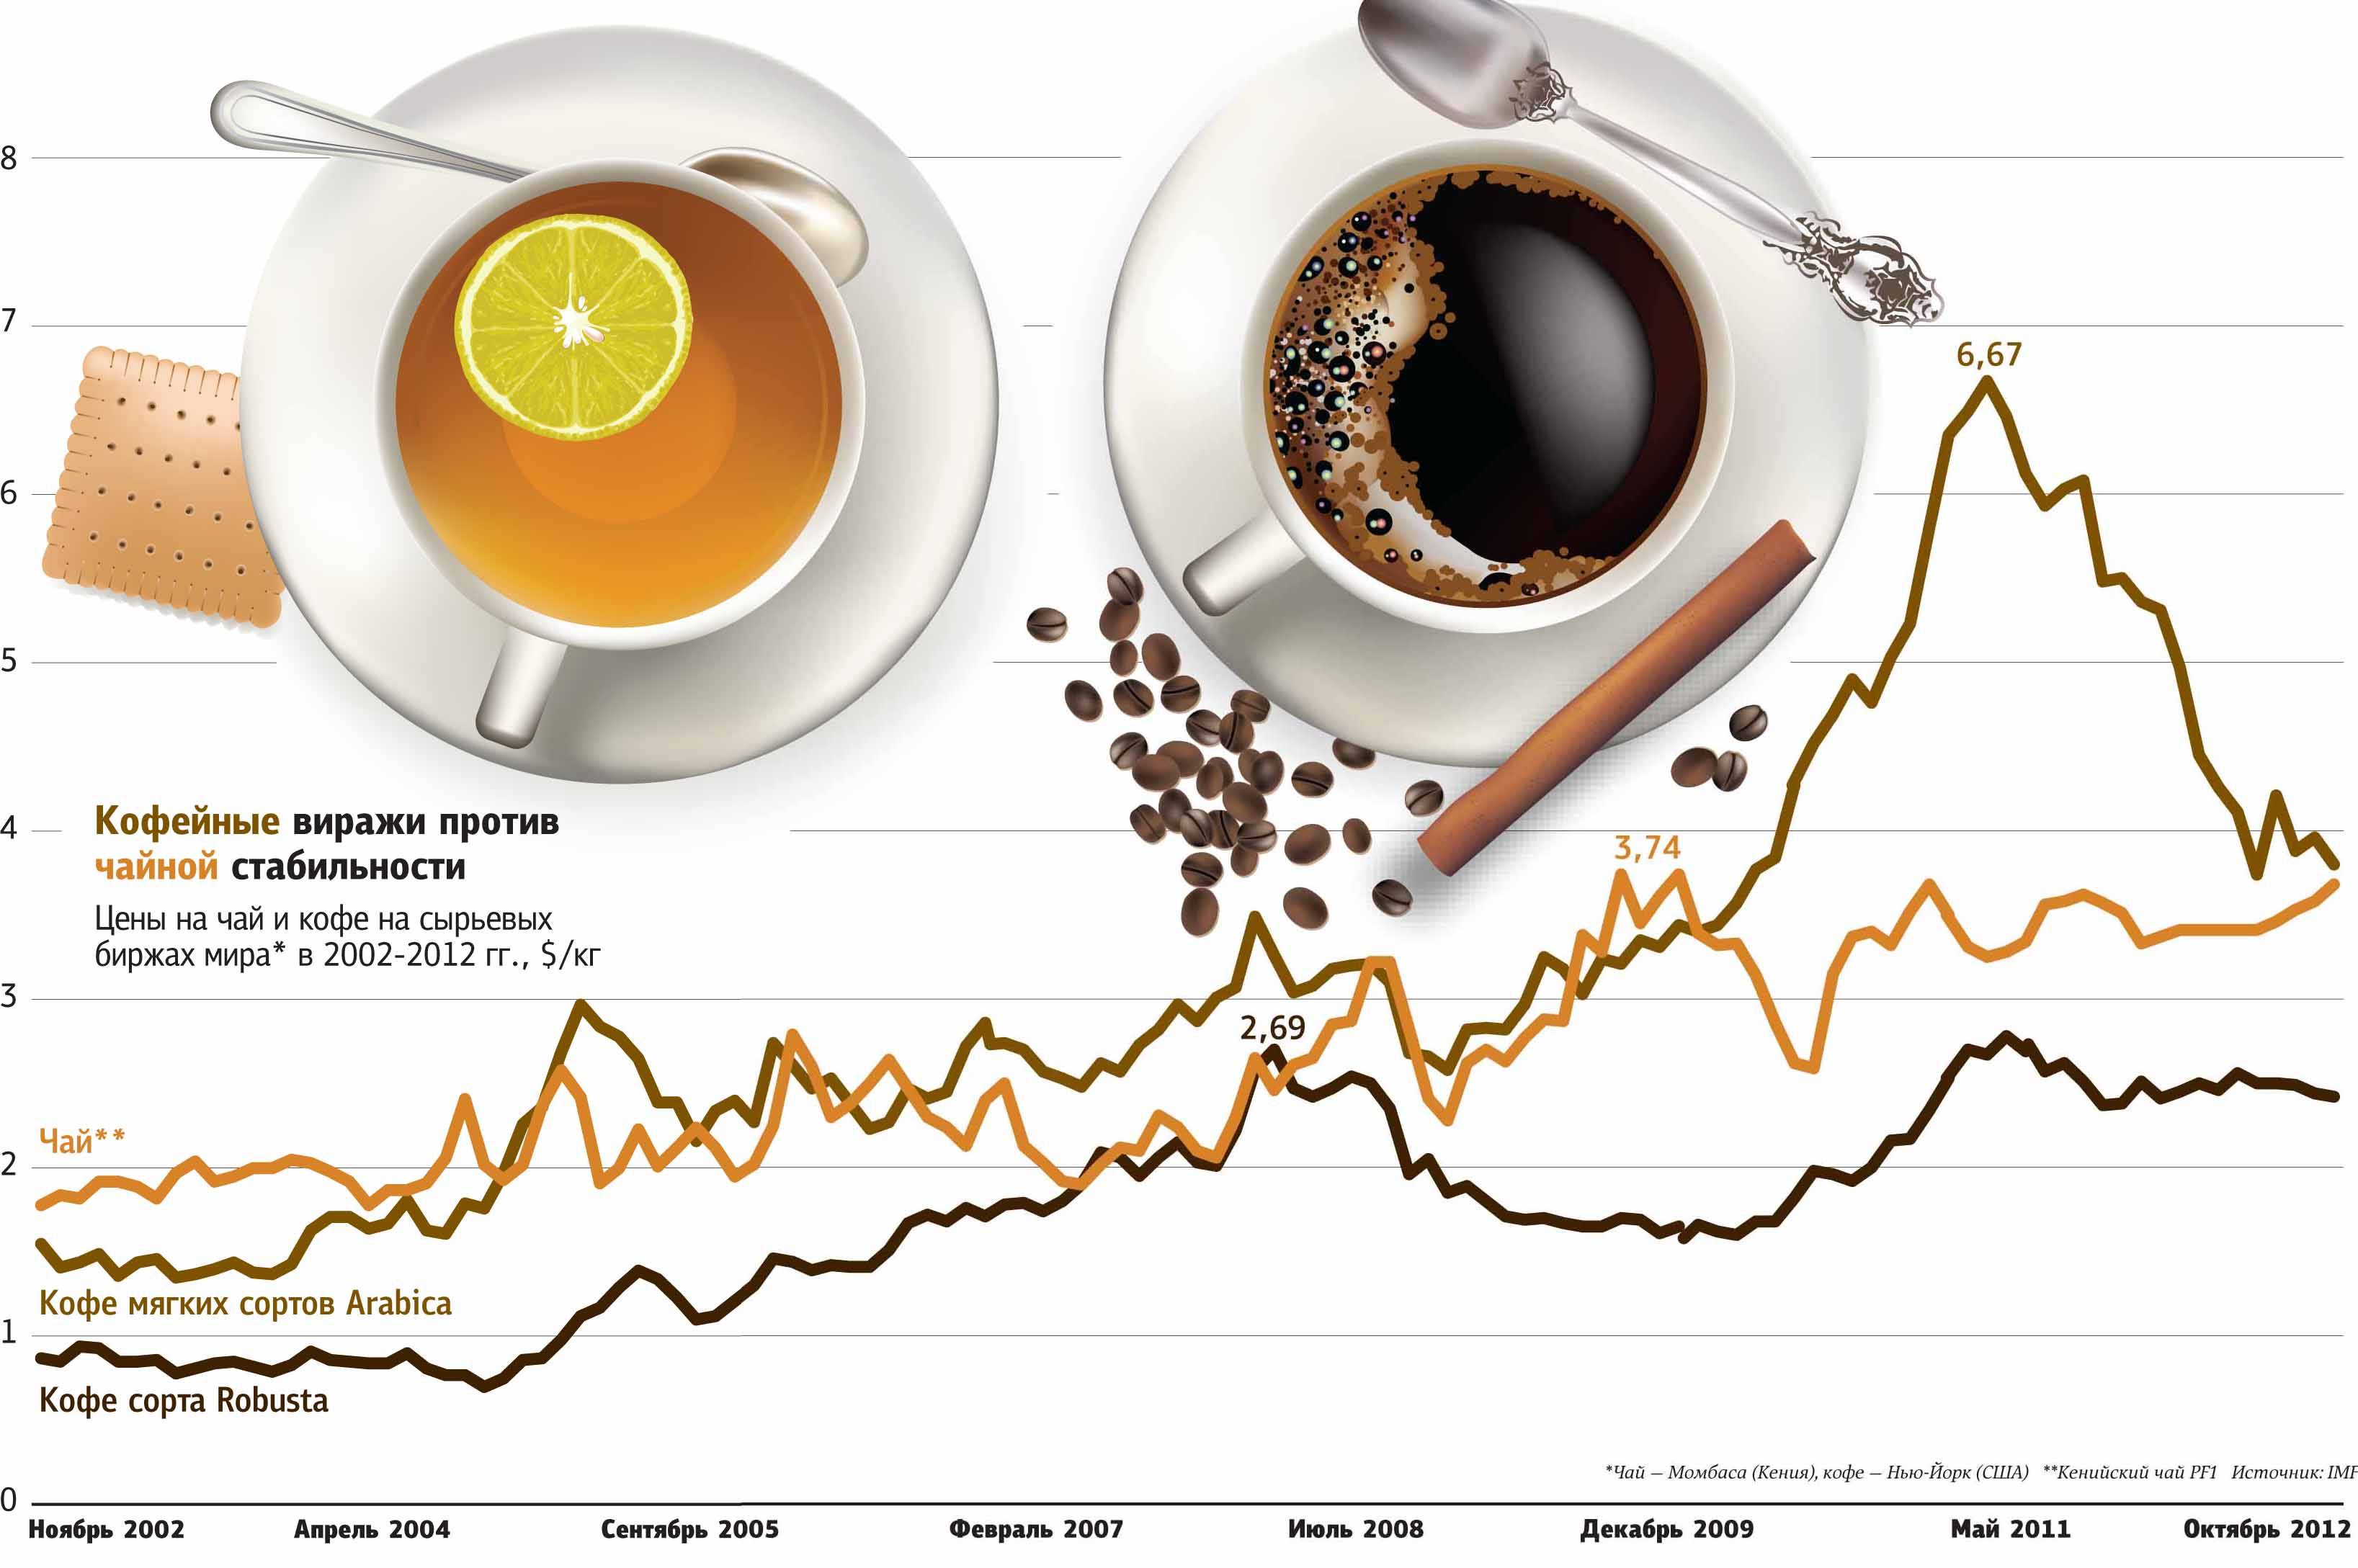 Кофе и чай: вред и польза | food and health